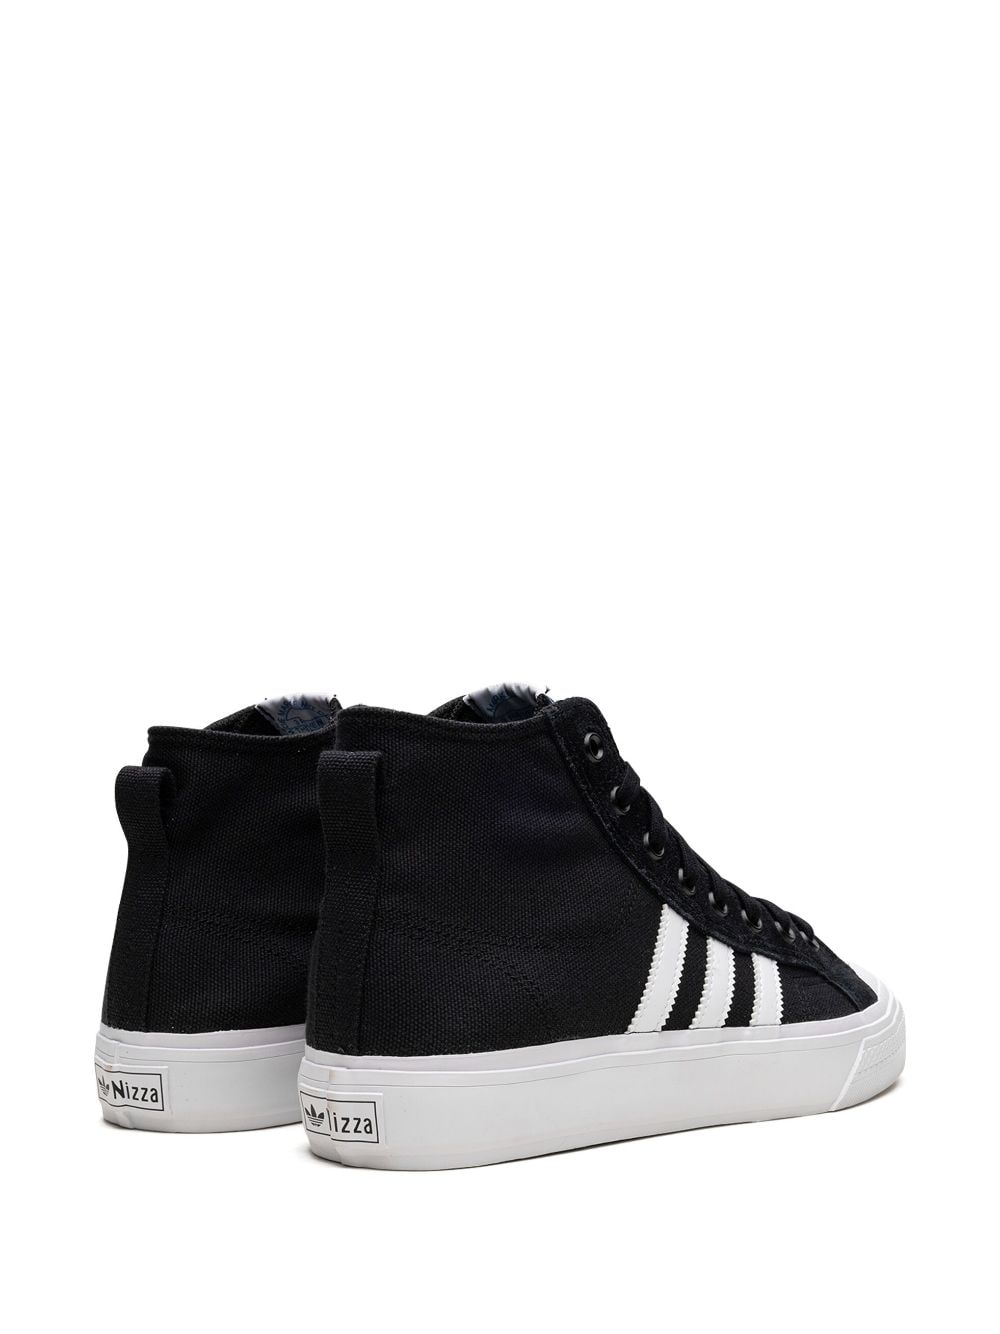 Shop Adidas Originals Nizza Hi Adv Sneakers In Black